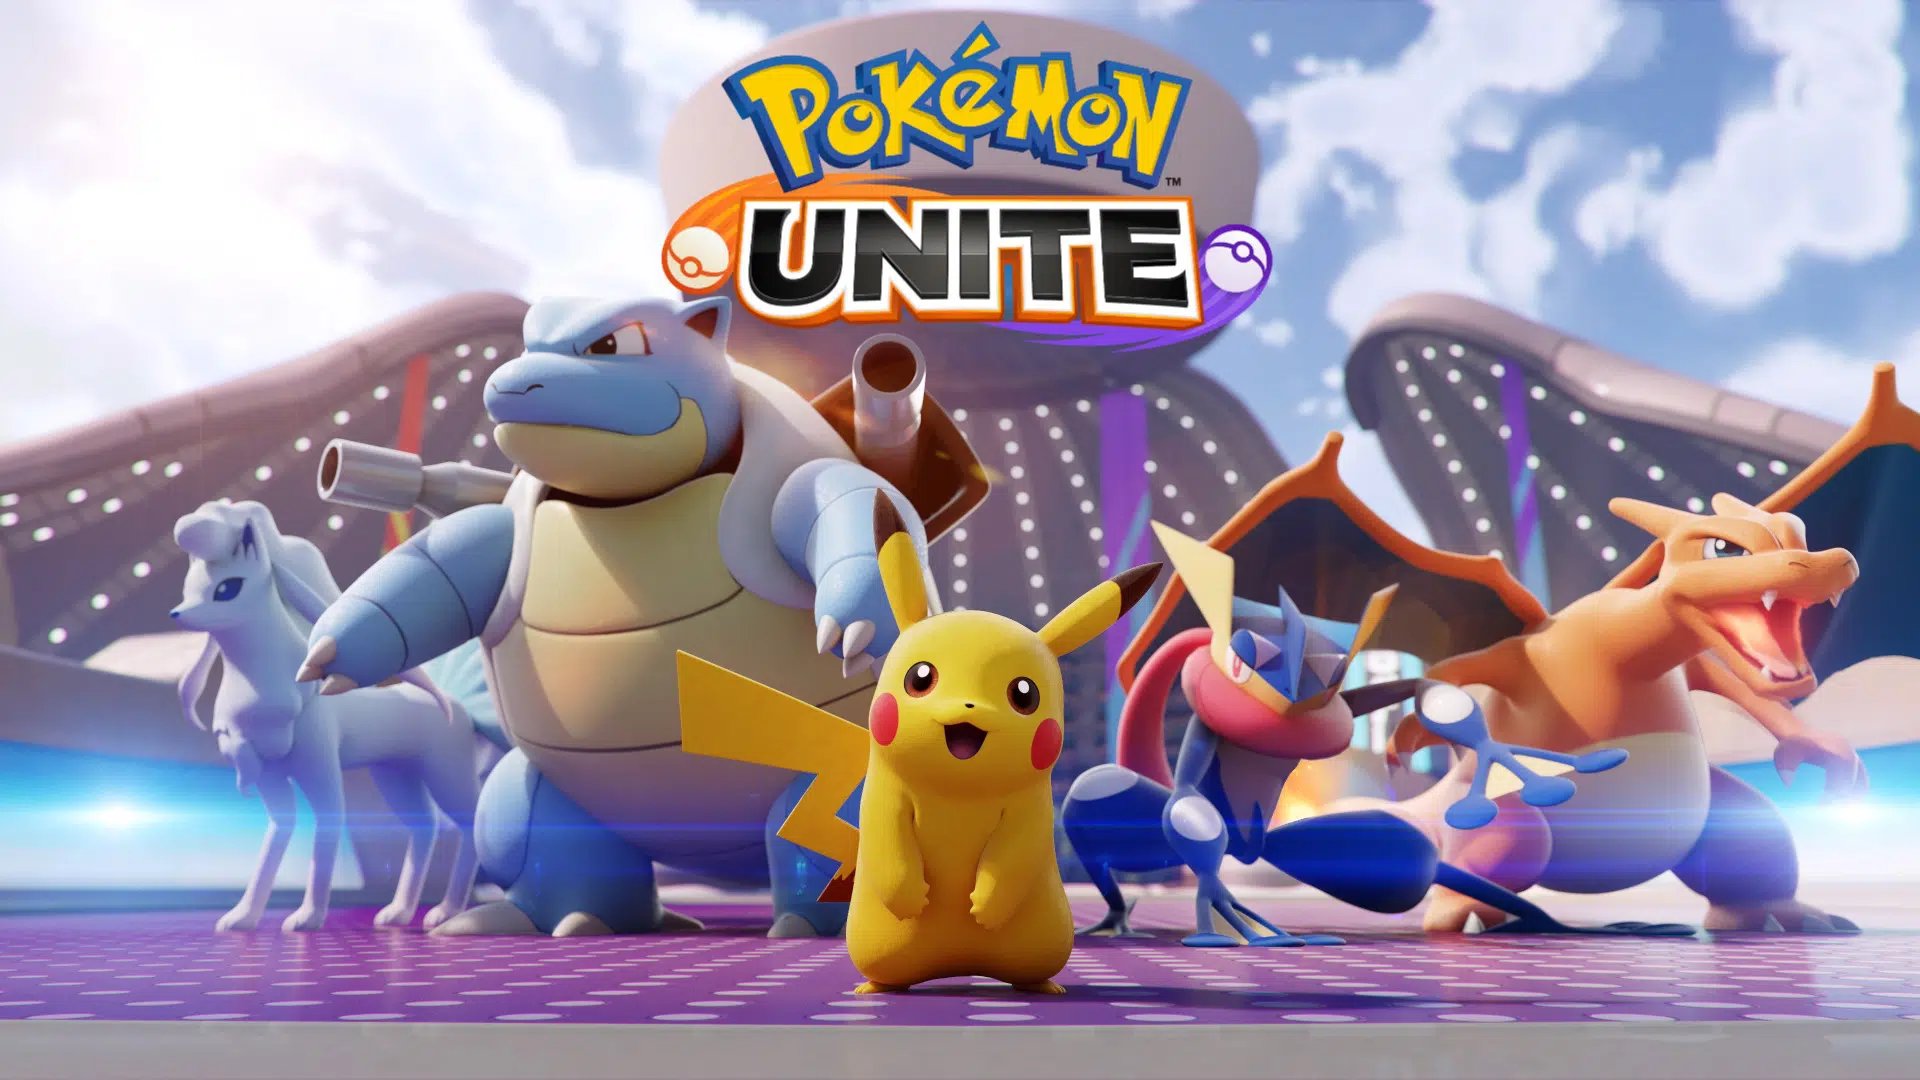 Pokémon UNITE alcança 50 milhões de downloads e dará recompensa, esports